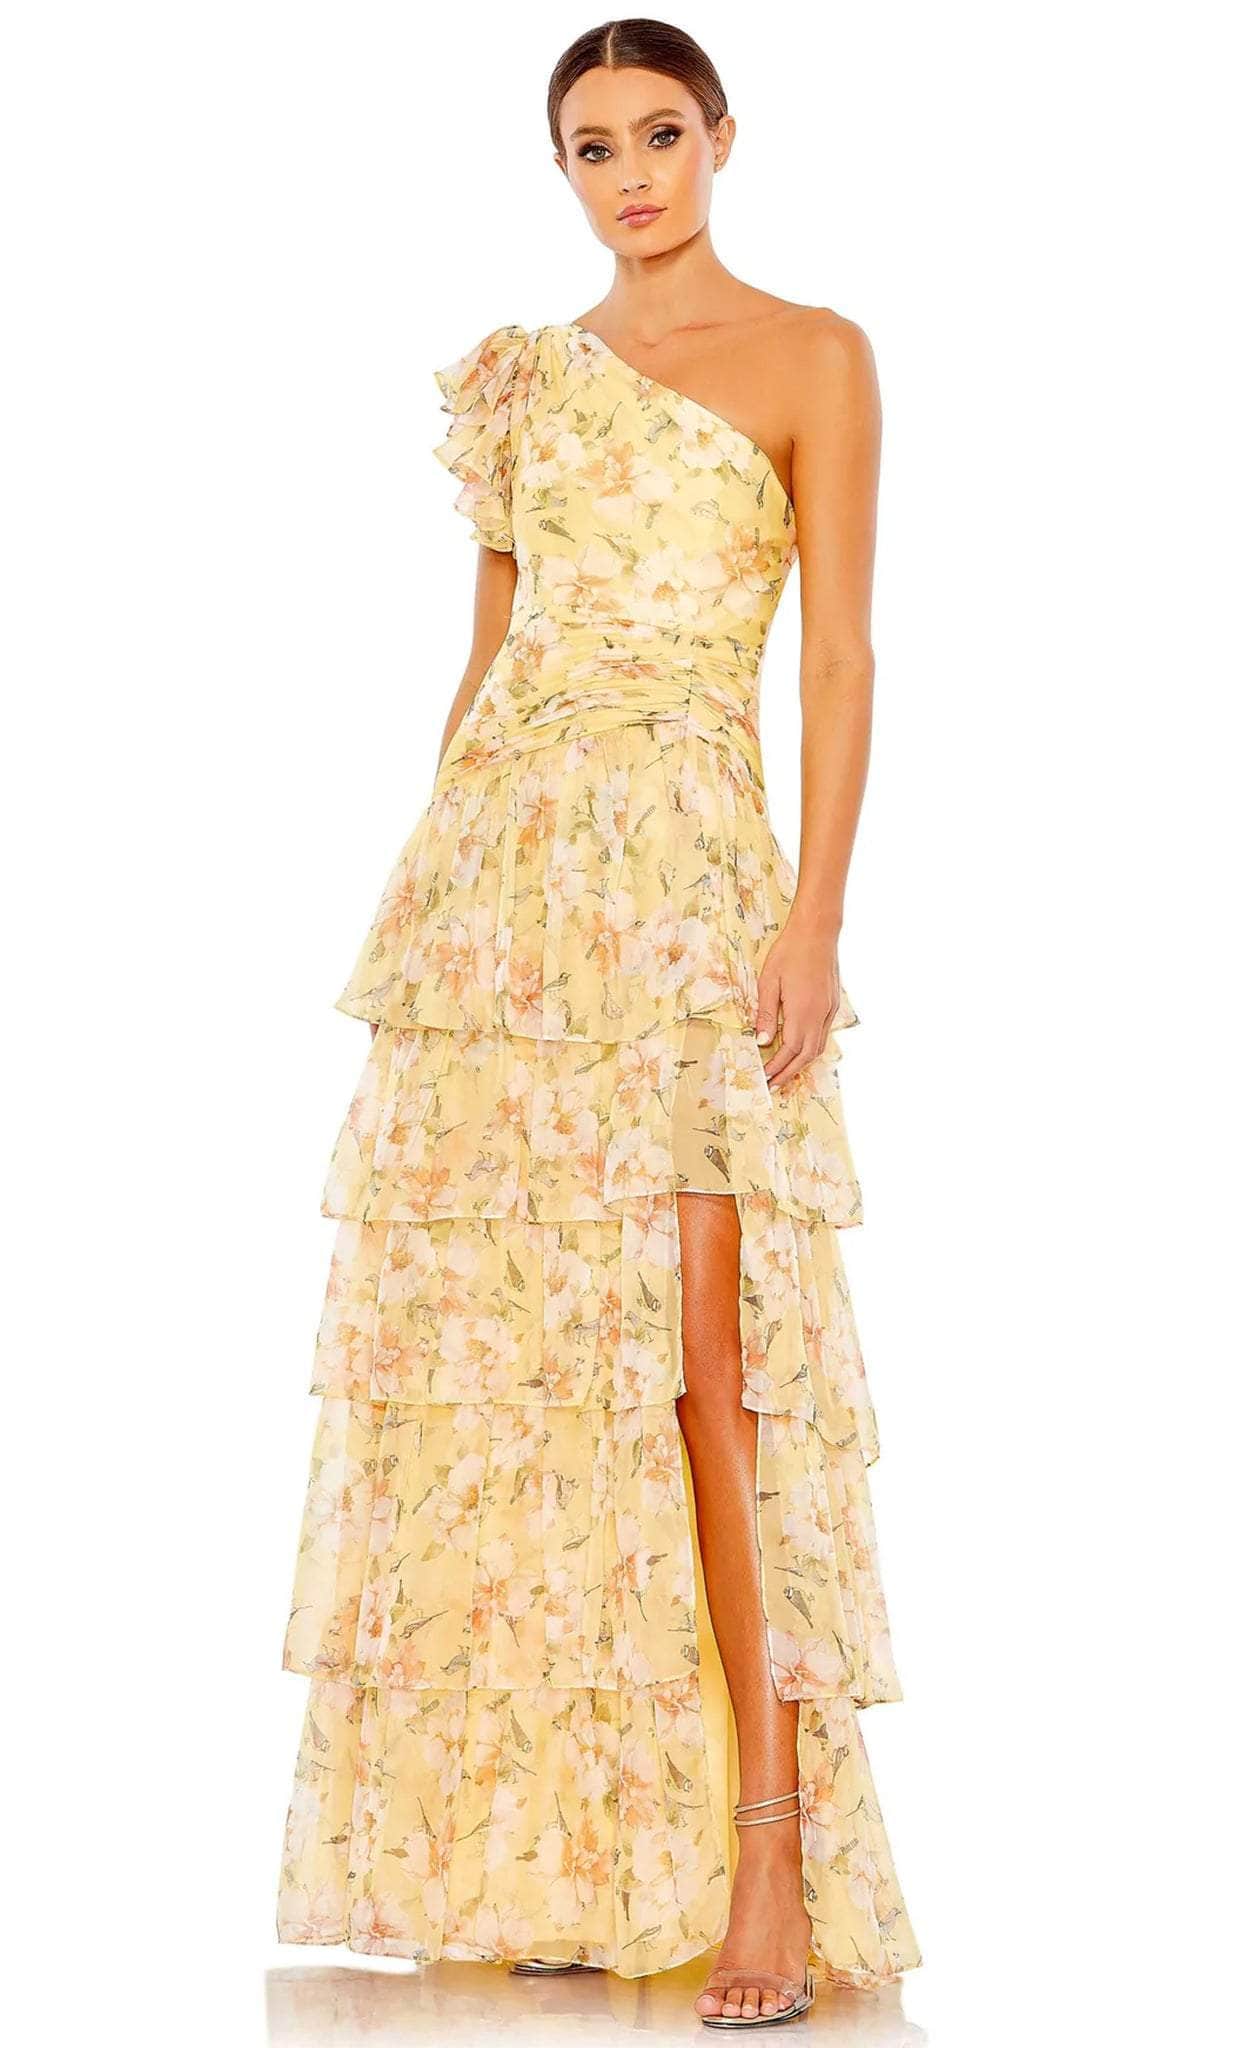 Ieena Duggal 55810 - One Sleeve Floral Printed Prom Dress
